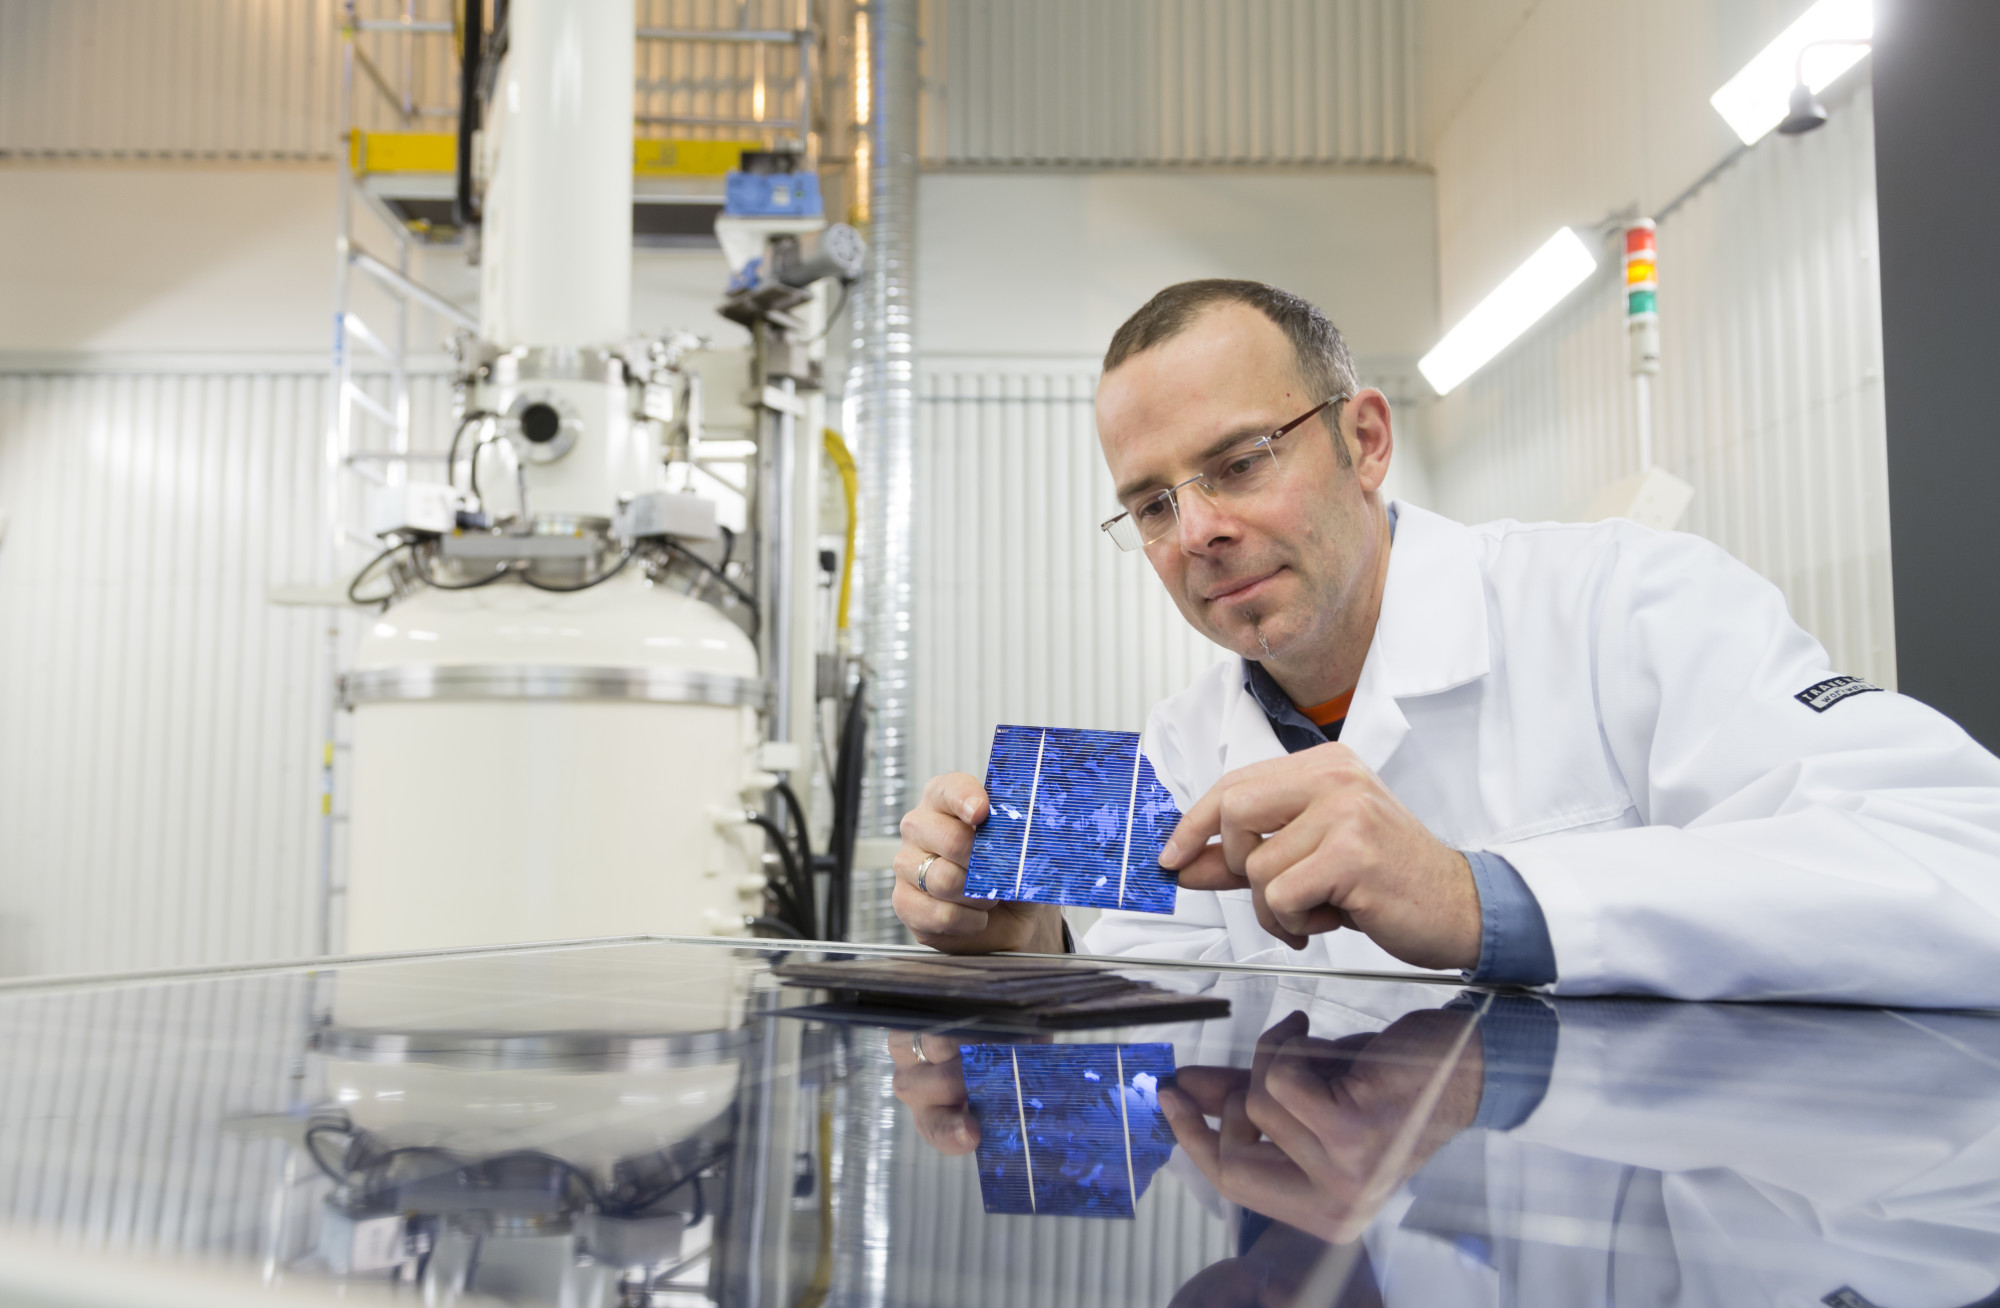 Mann i hvit labororiefrakk sitter i laboratorium mens han ser på en solcelle han holder i hendene